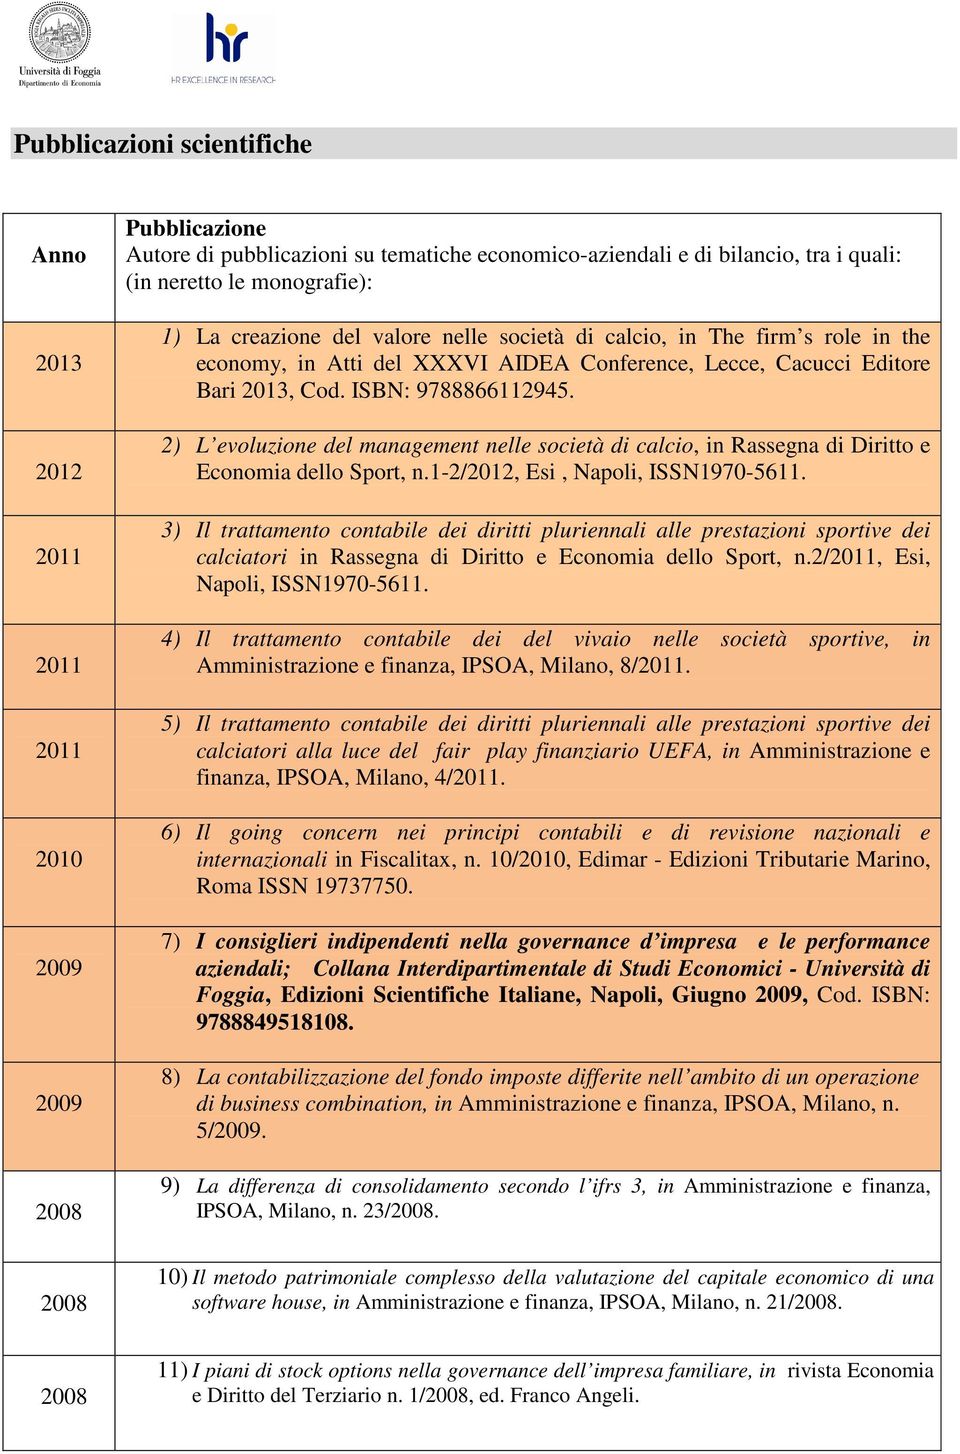 2) L evoluzione del management nelle società di calcio, in Rassegna di Diritto e Economia dello Sport, n.1-2/2012, Esi, Napoli, ISSN1970-5611.